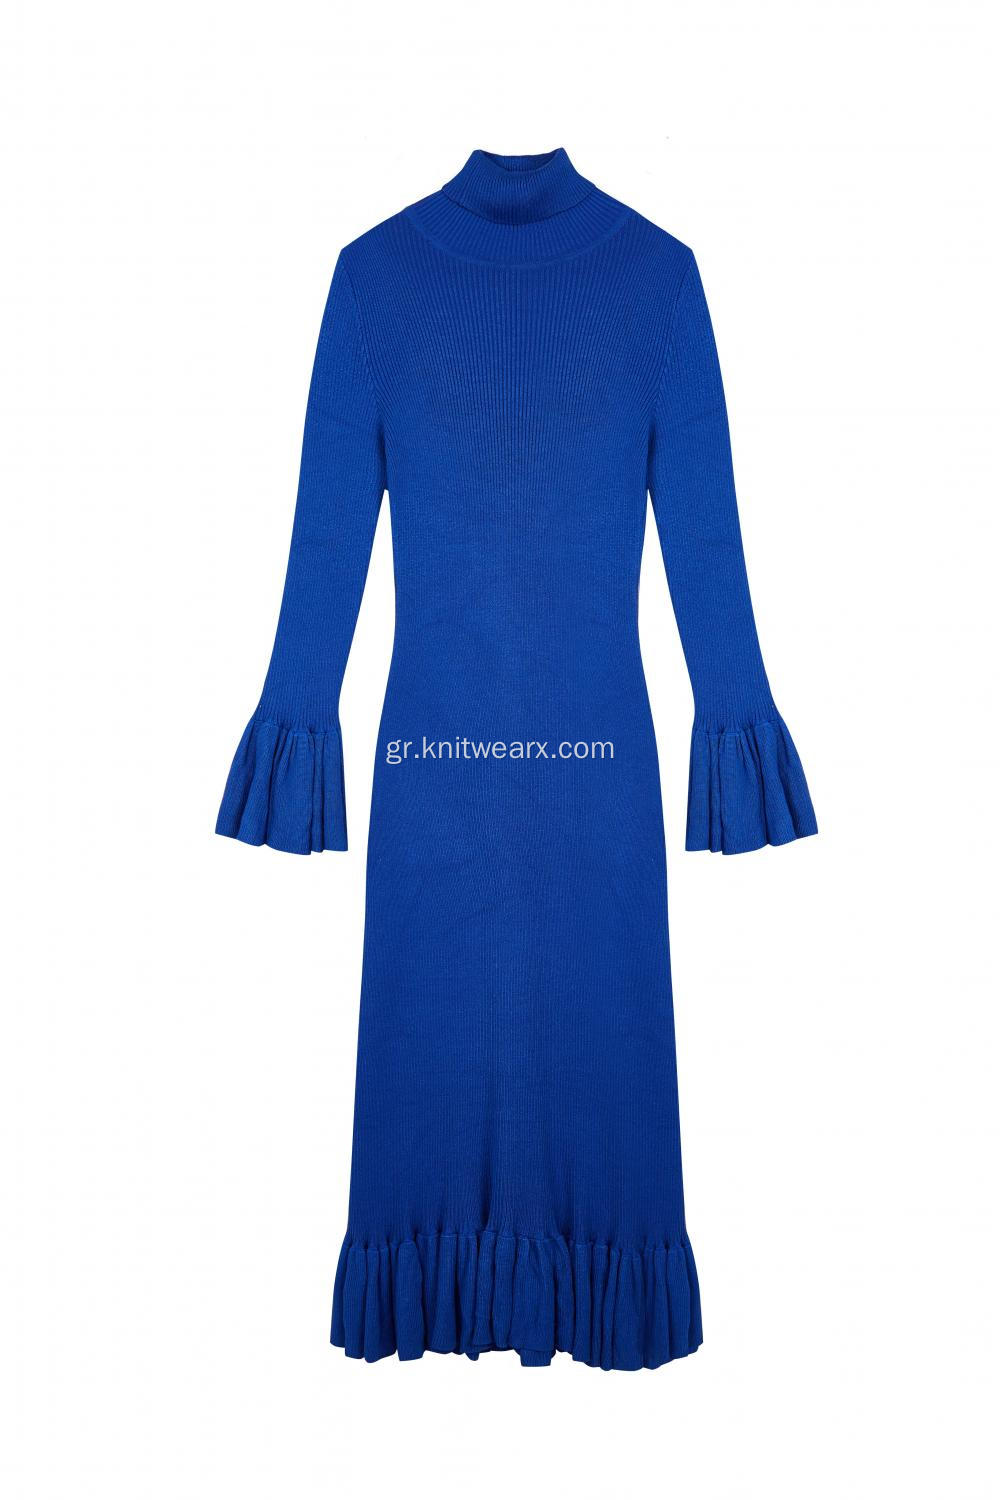 Γυναικείο πλεκτό ραβδωτό τεντώσιμο μανίκι μακρύ φόρεμα